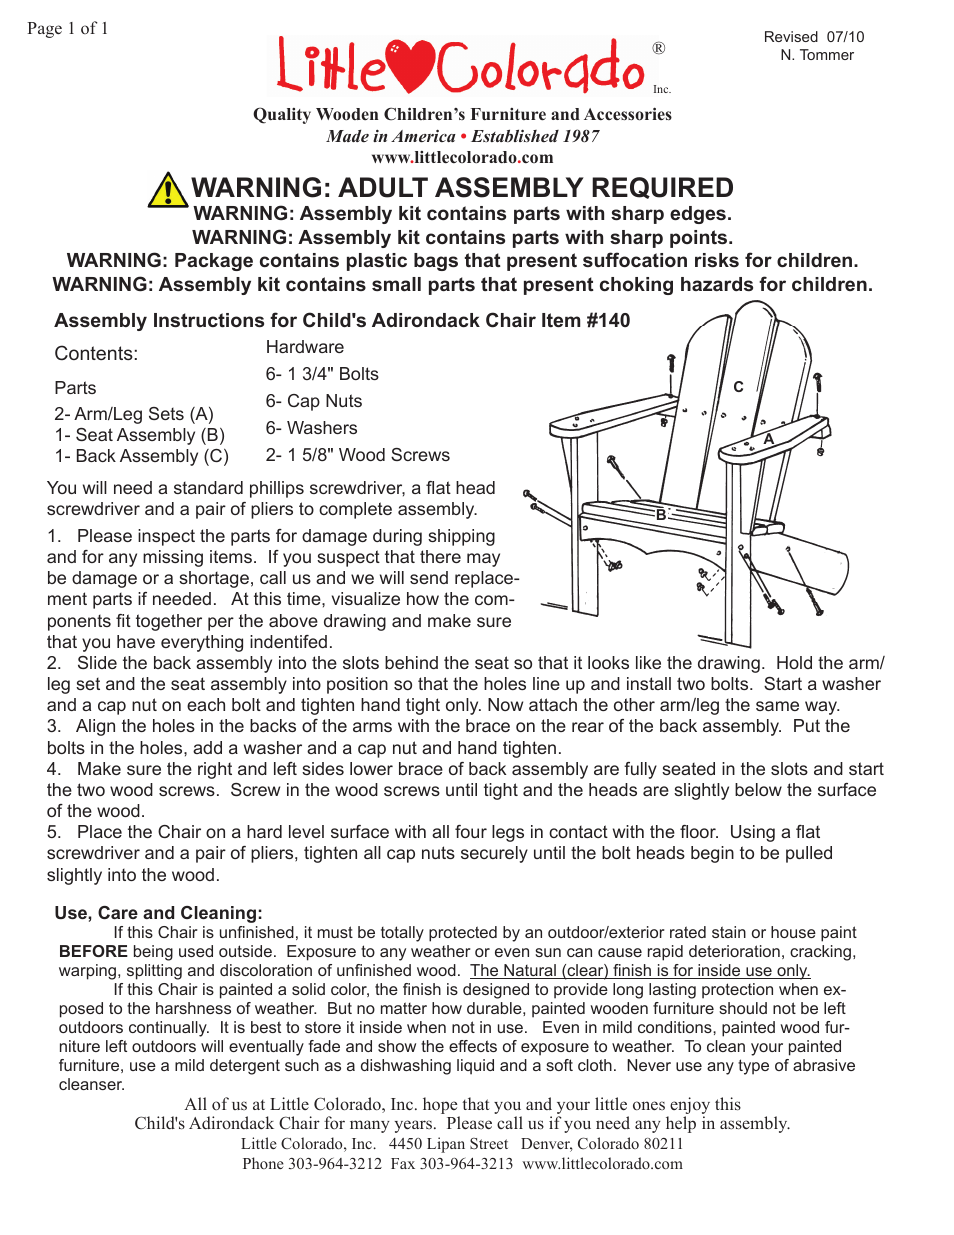 Child's Adirondack Chair 140